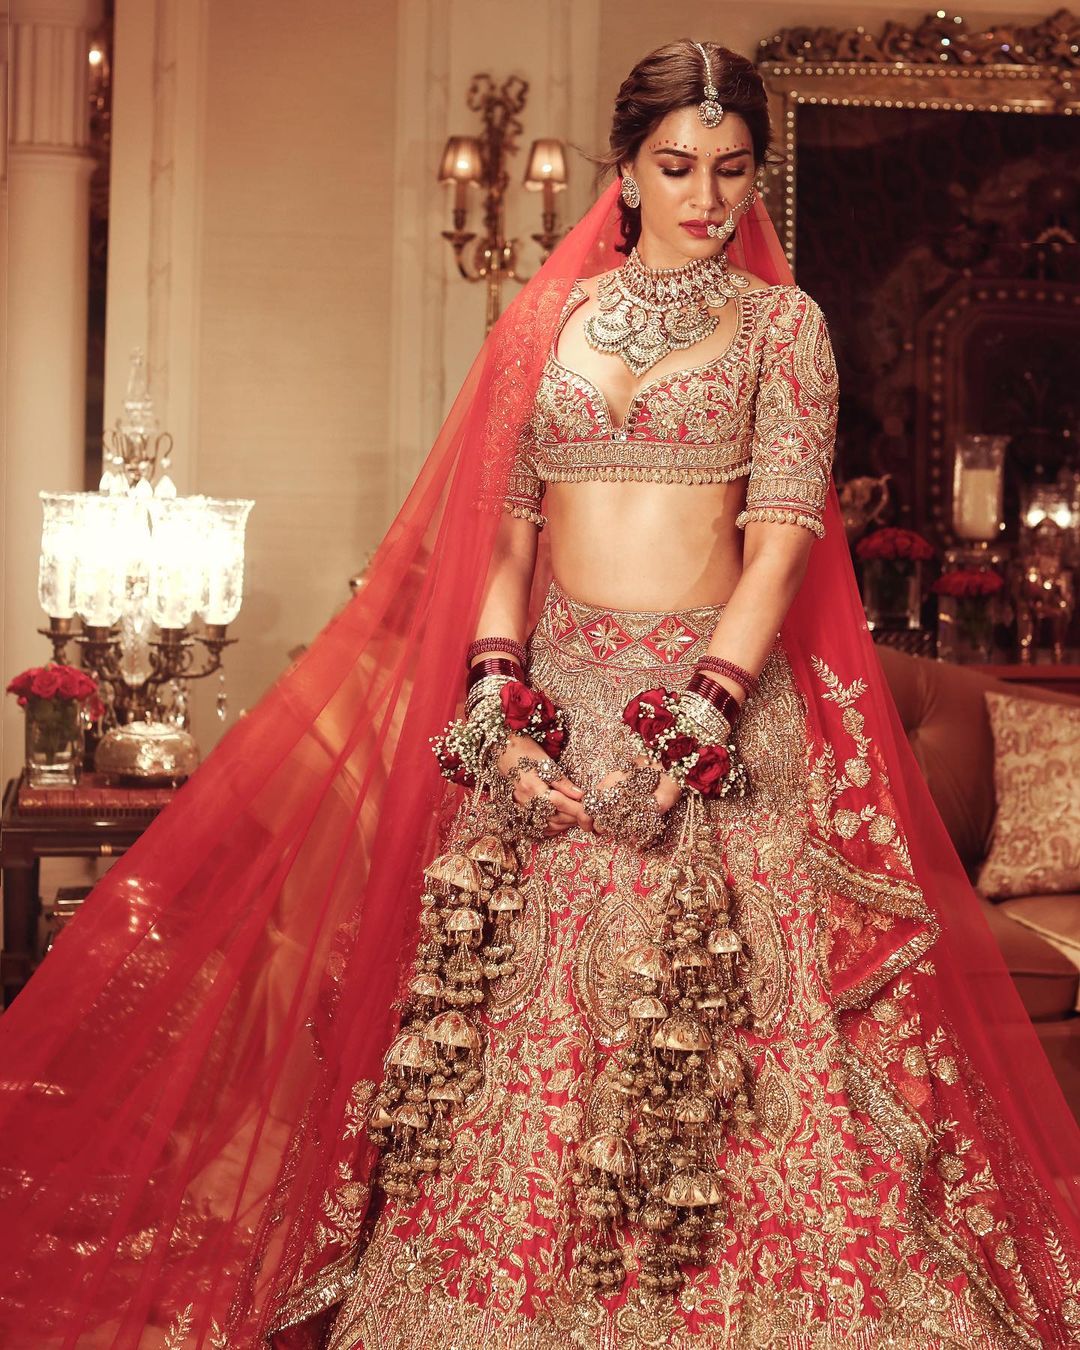 Kriti Sanon looks divine in the bridal getup. 